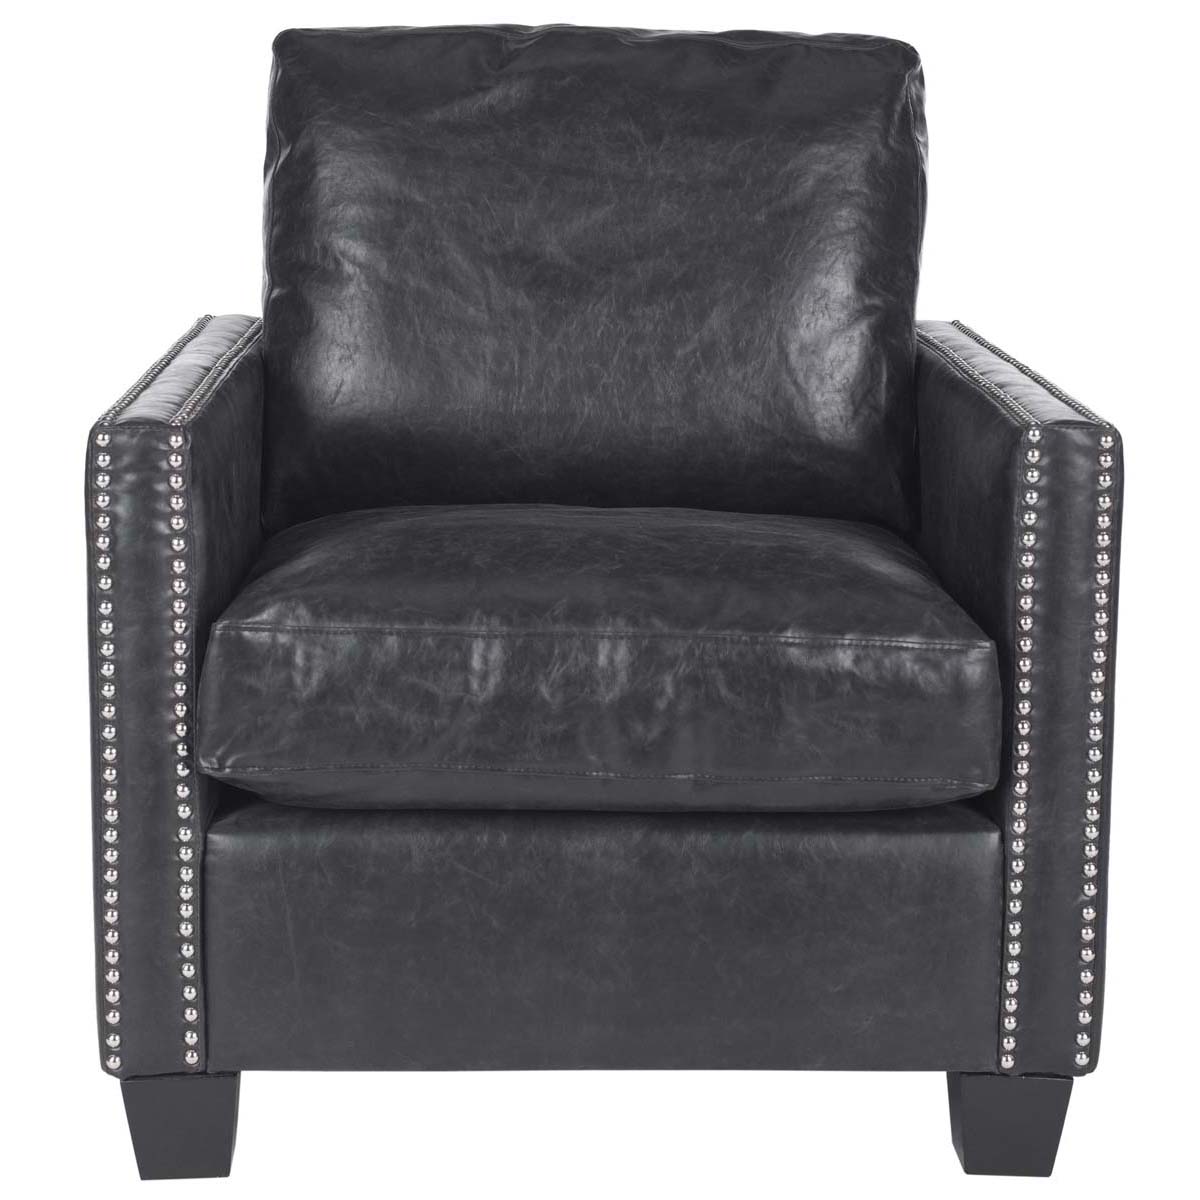 Safavieh Horace Leather Club Chair , MCR4736